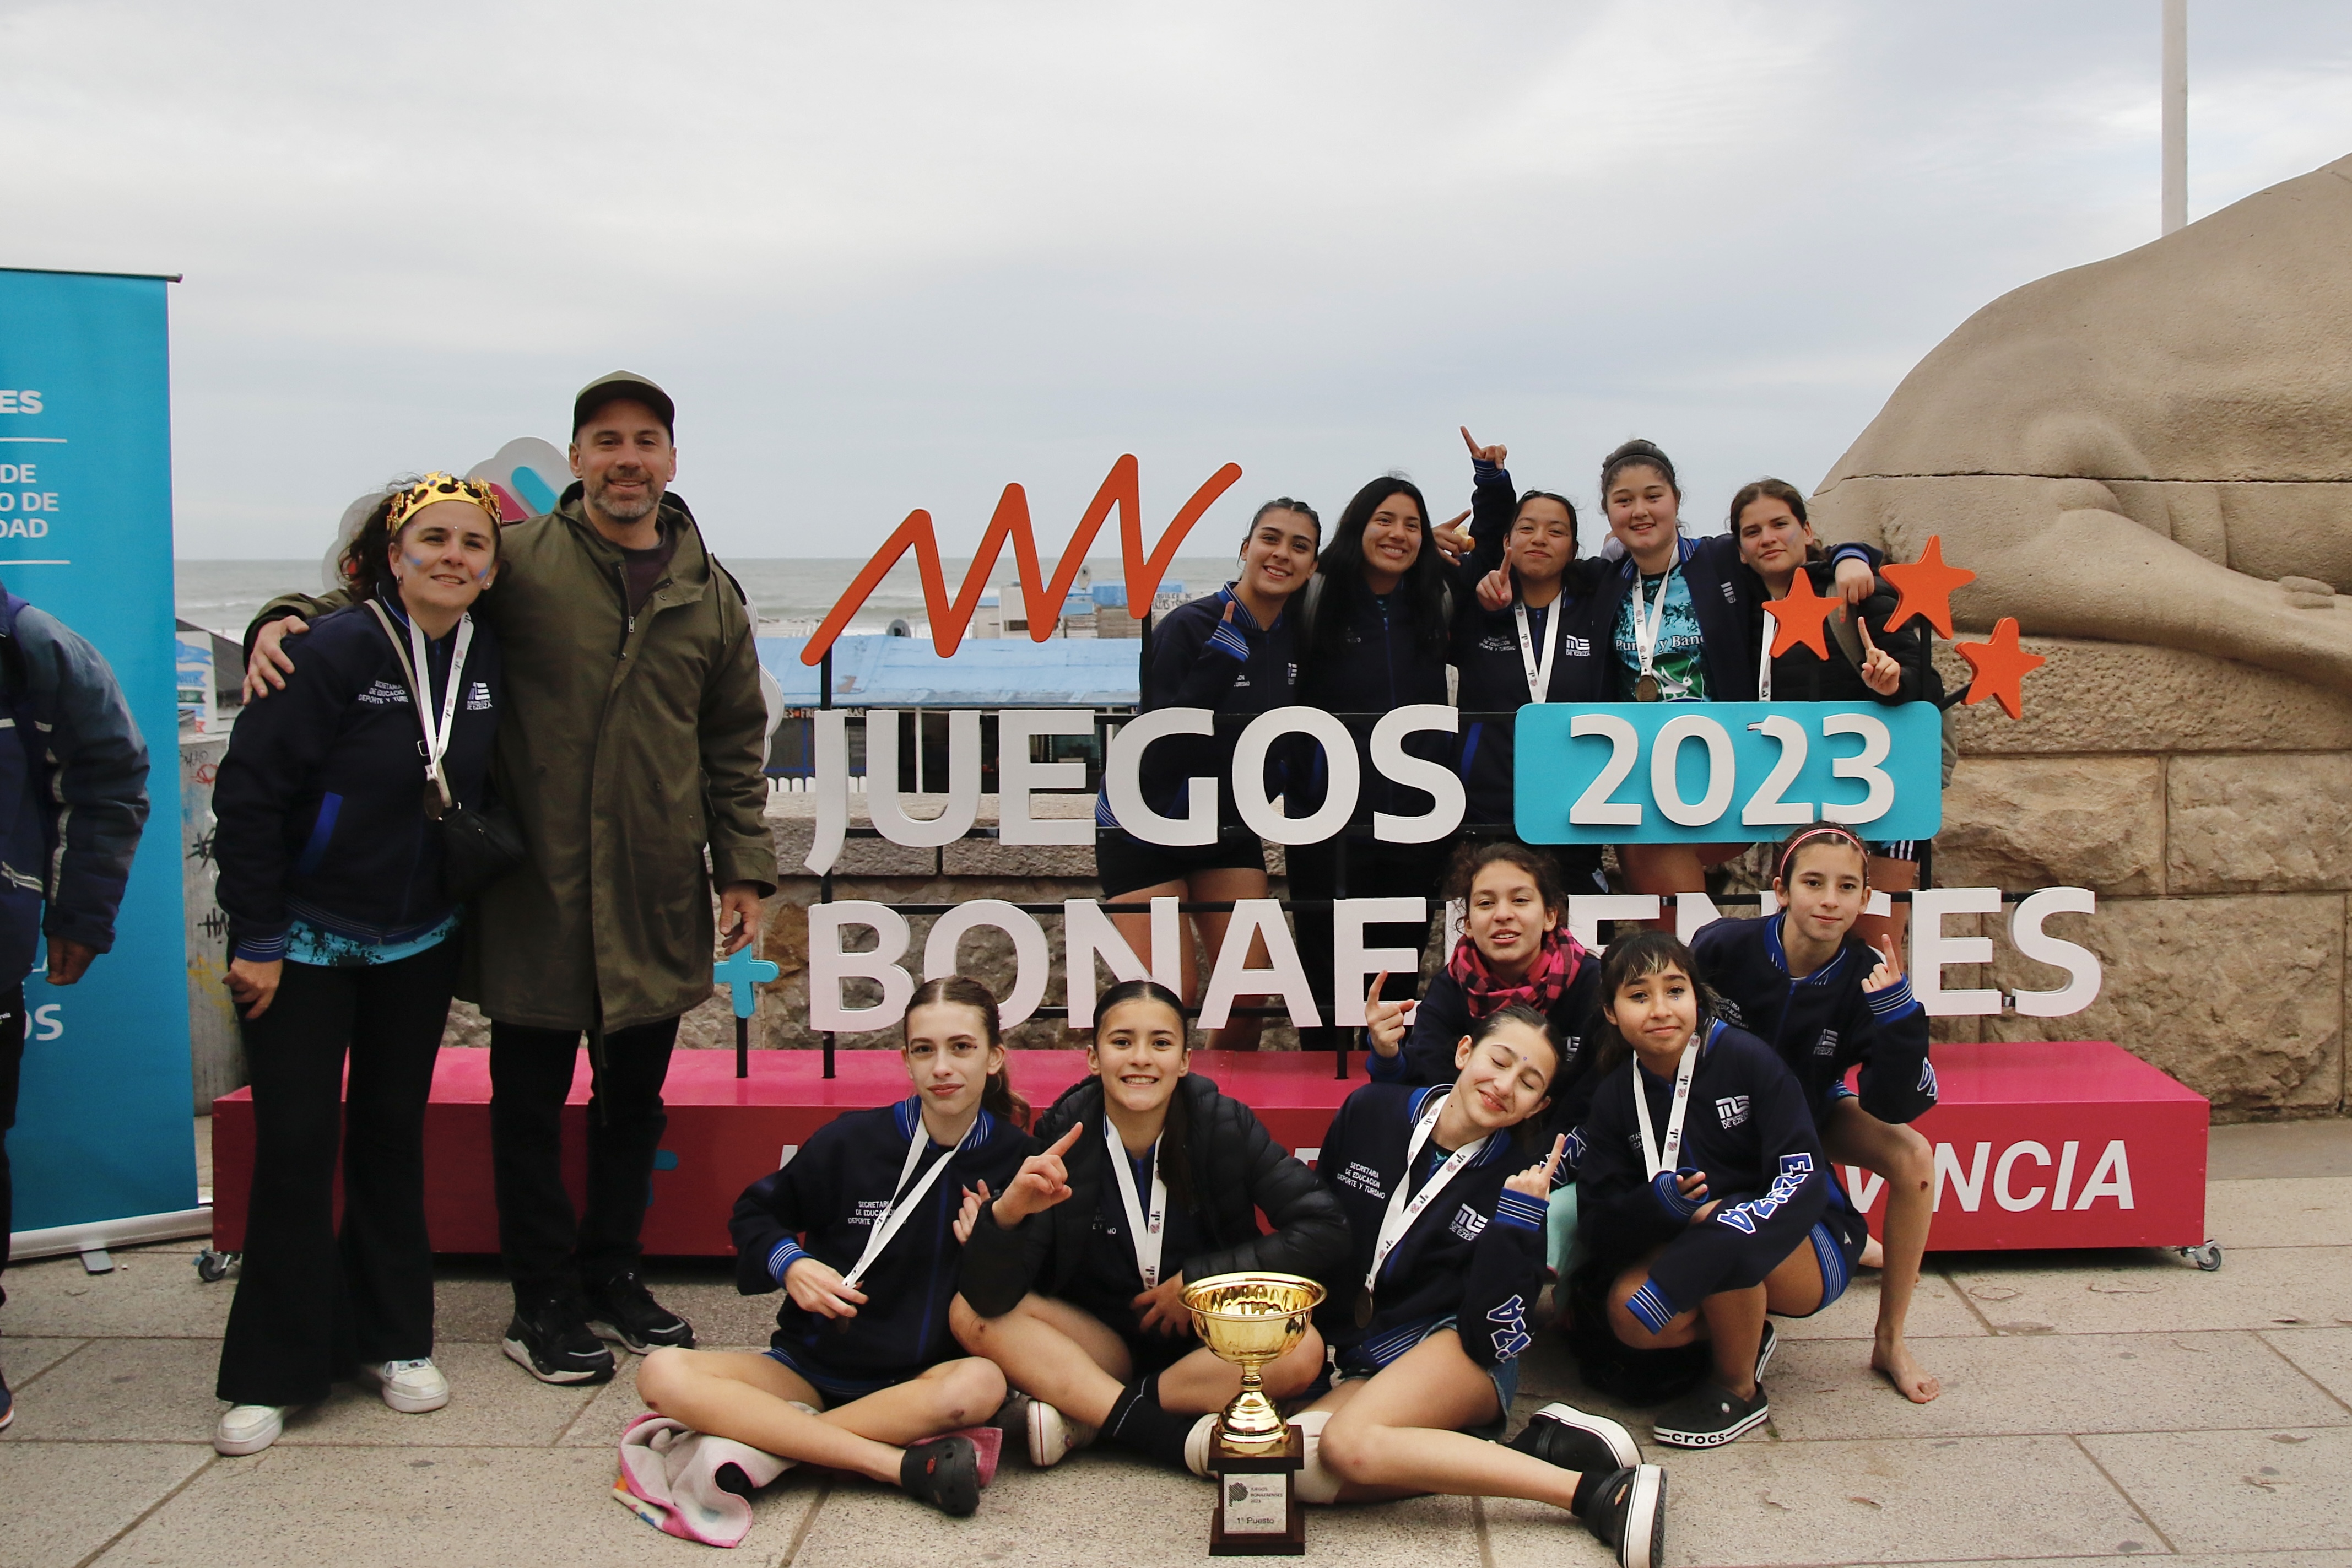 Equipo con la copa - Juegos Bonaerenses 2023